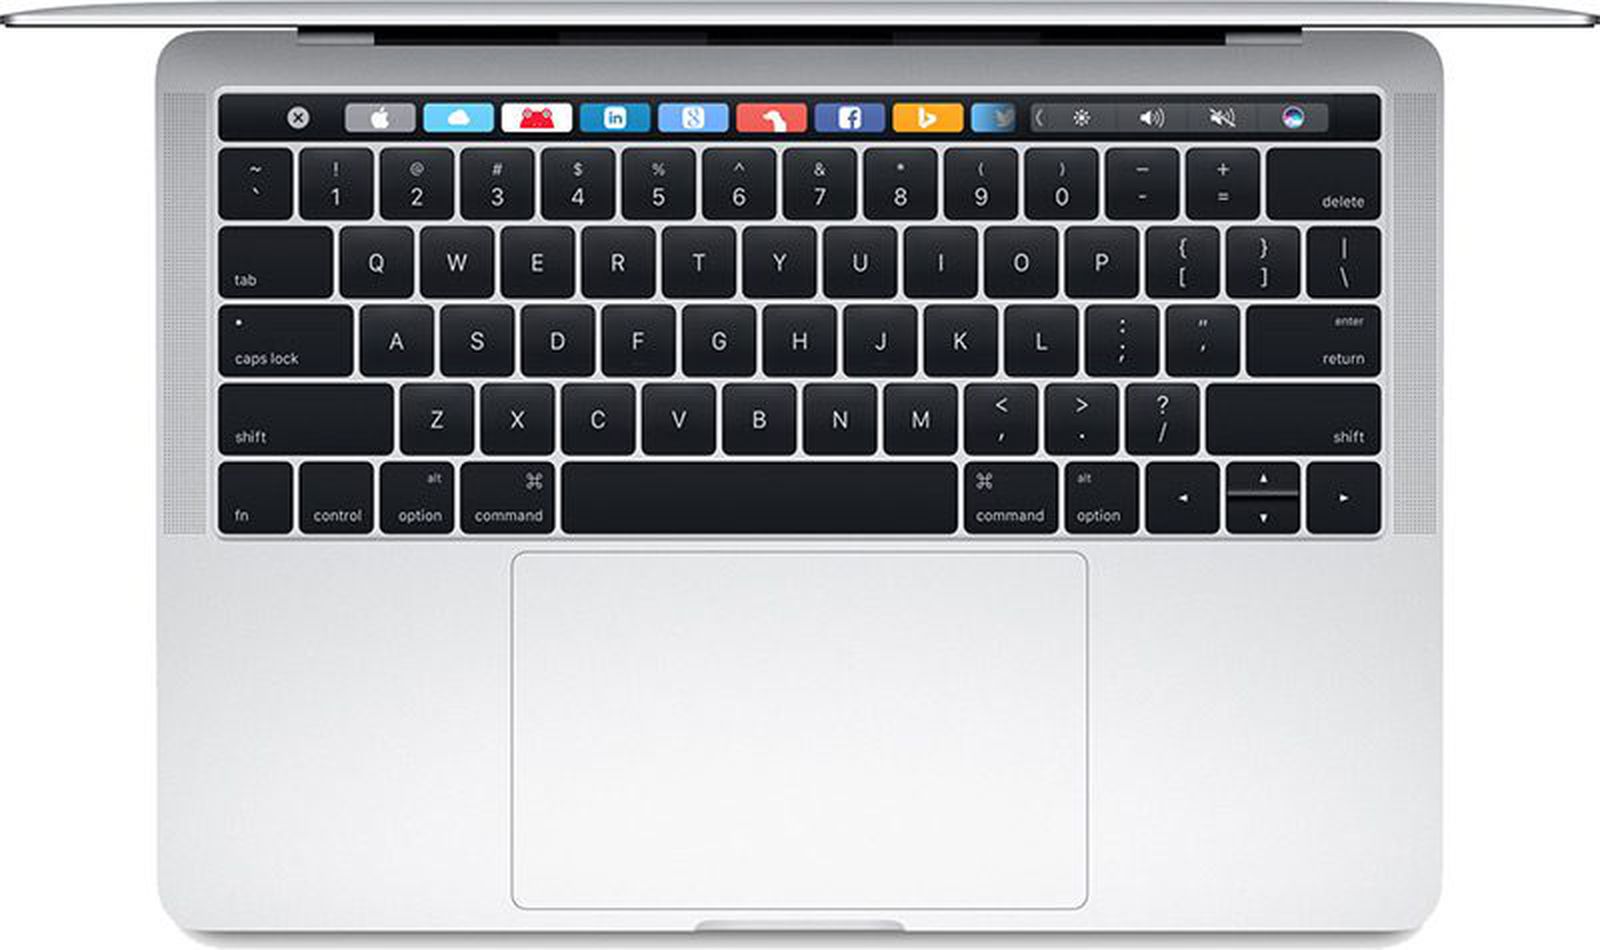 How to Fix Stuck Keys on Mac